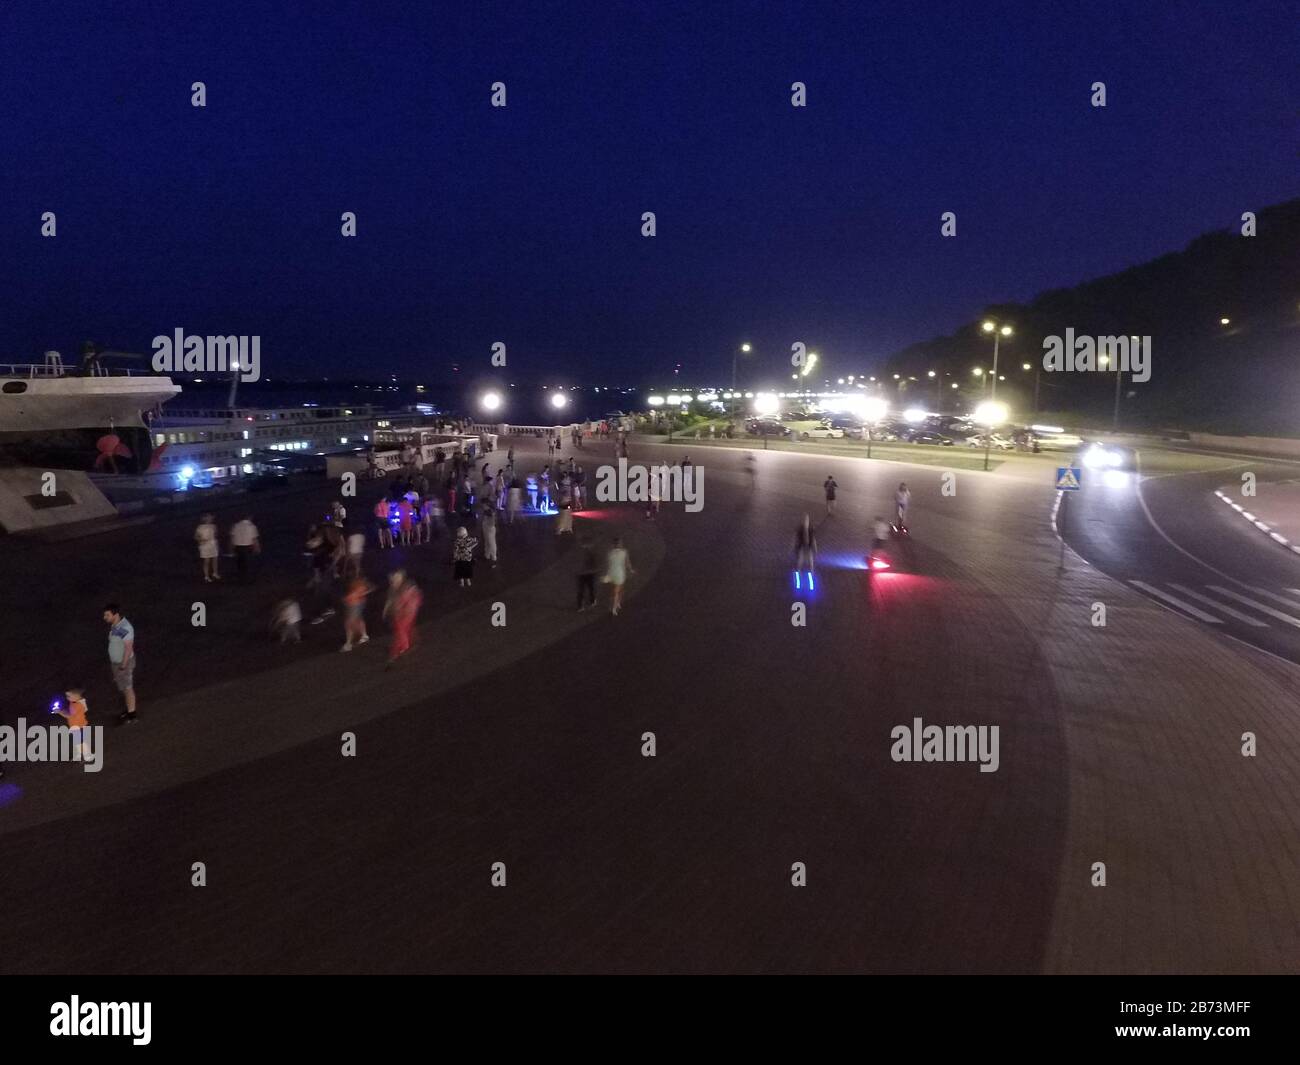 Scalinata di Chkalov, Notte, illuminata da lanterne. La piazza di fronte ad essa, una piattaforma pedonale. Russia Foto Stock